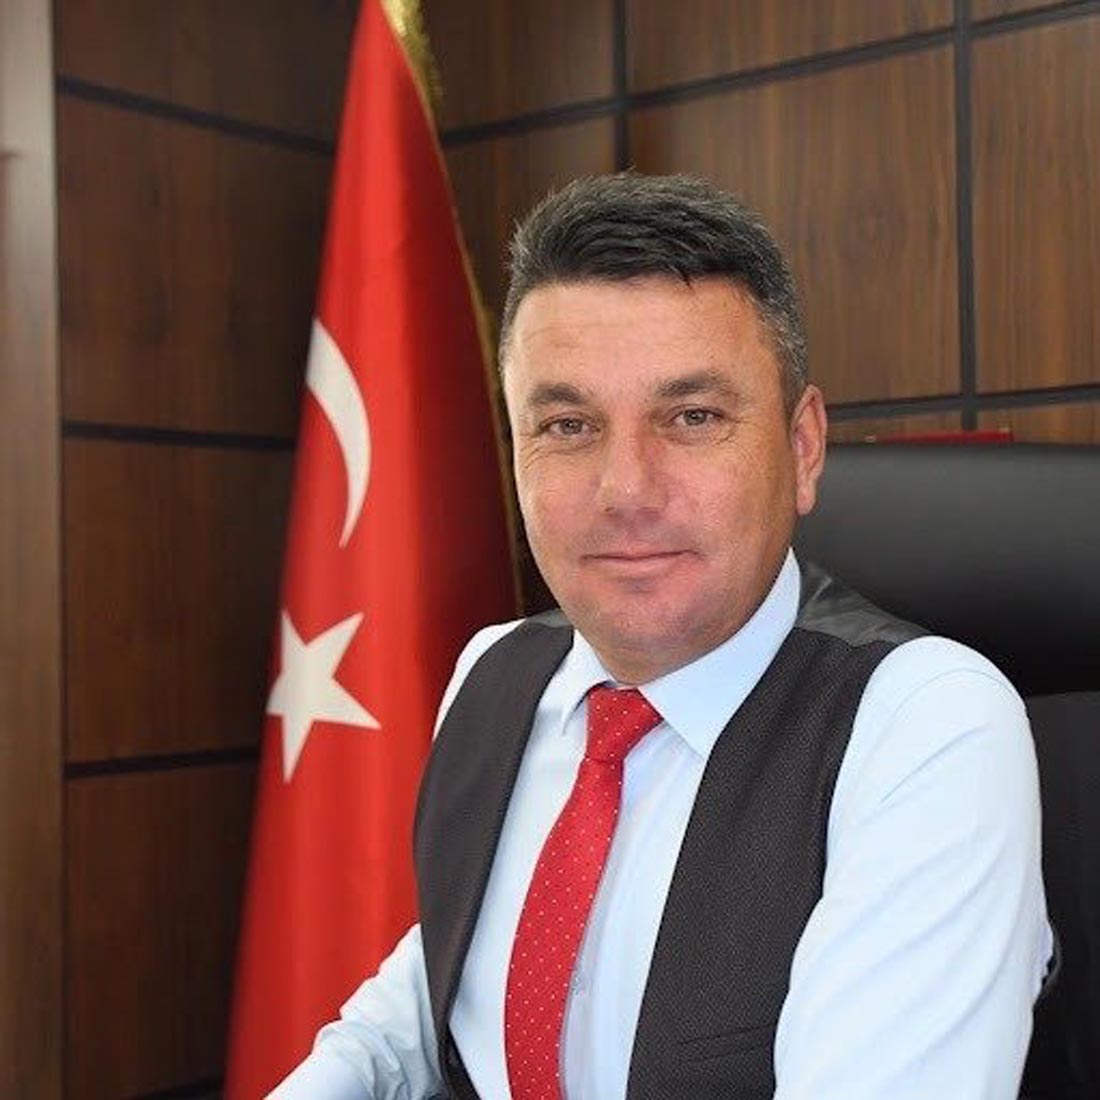 CHP'li Belediye Başkanı Ender Sevinç kimdir? Nereli, kaç yaşında? Ender Sevinç Biyografisi